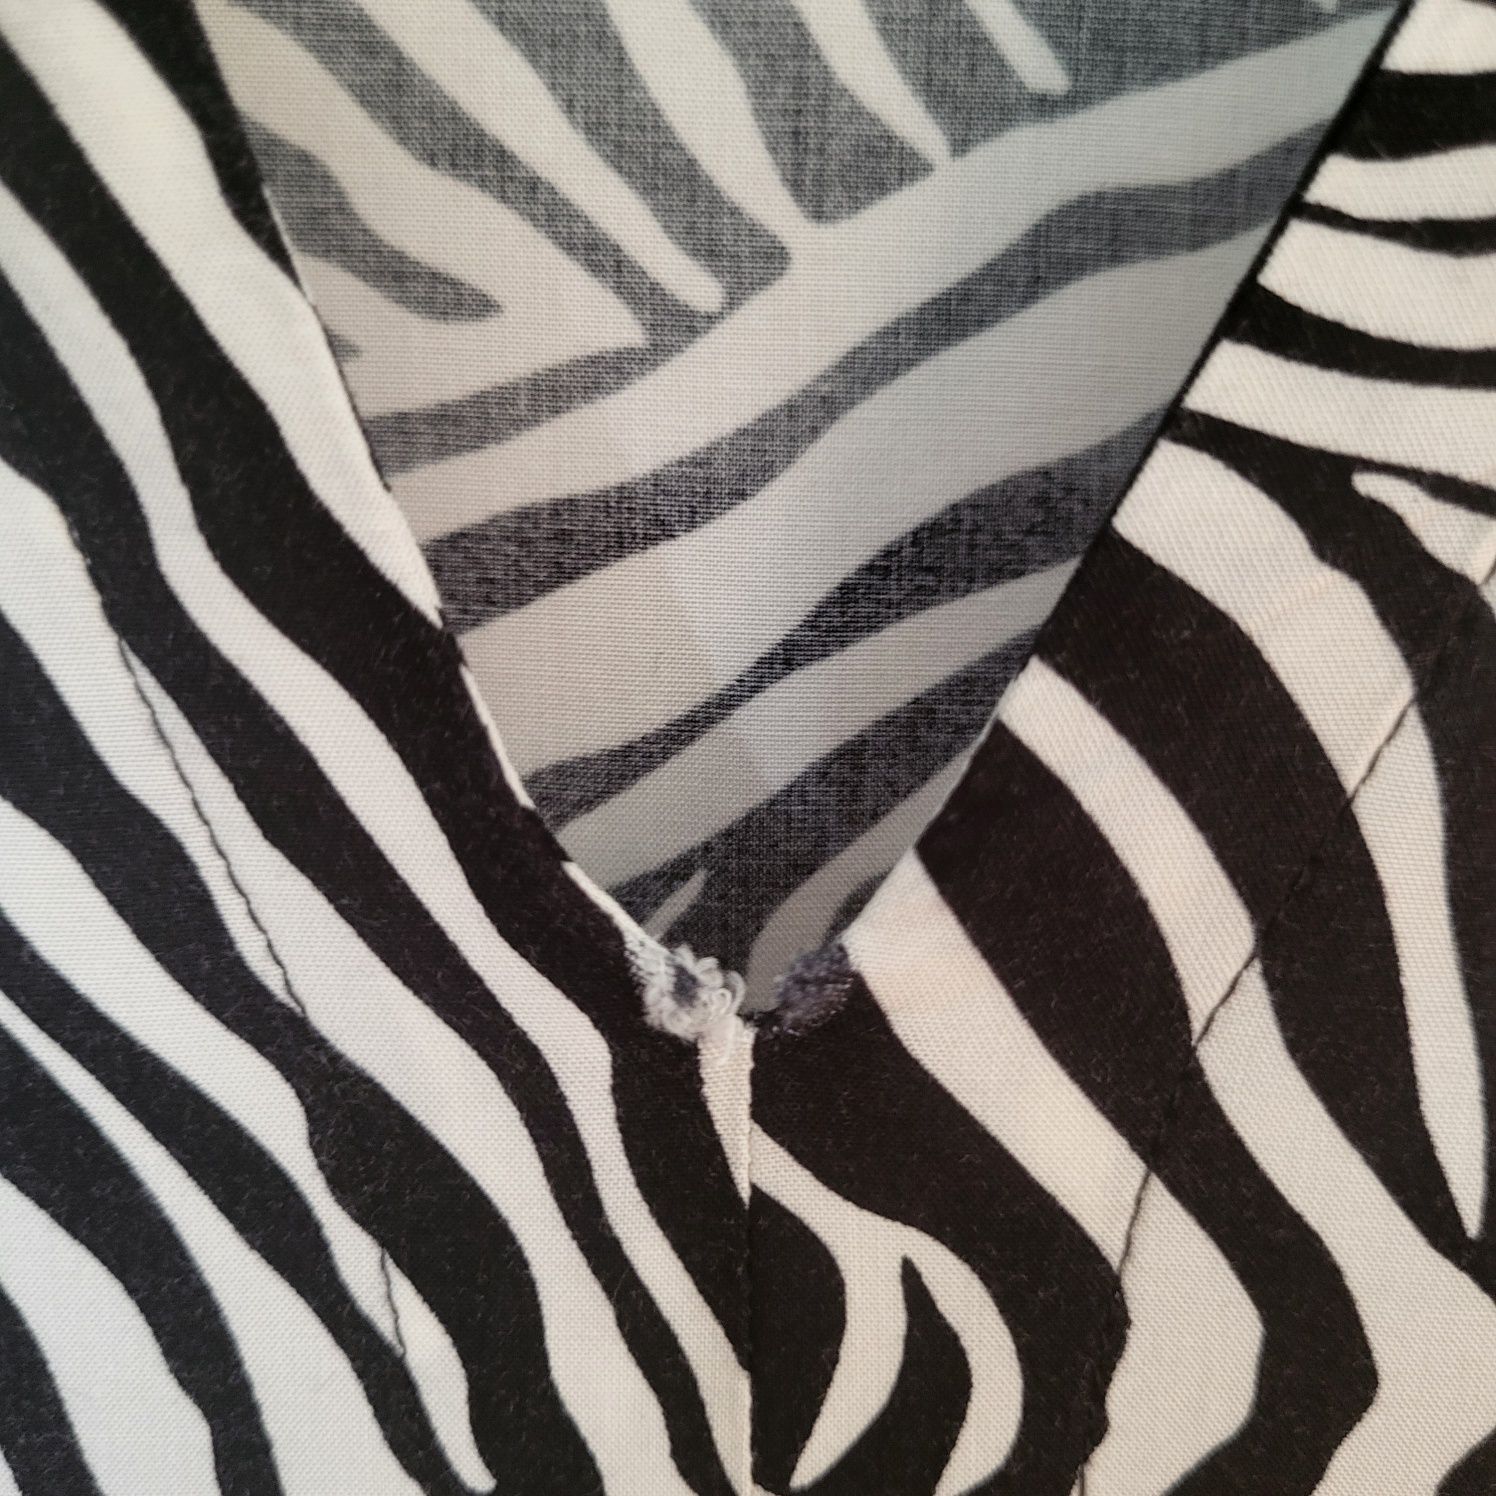 Sukienka damska C&A rozmiar 38 zebra